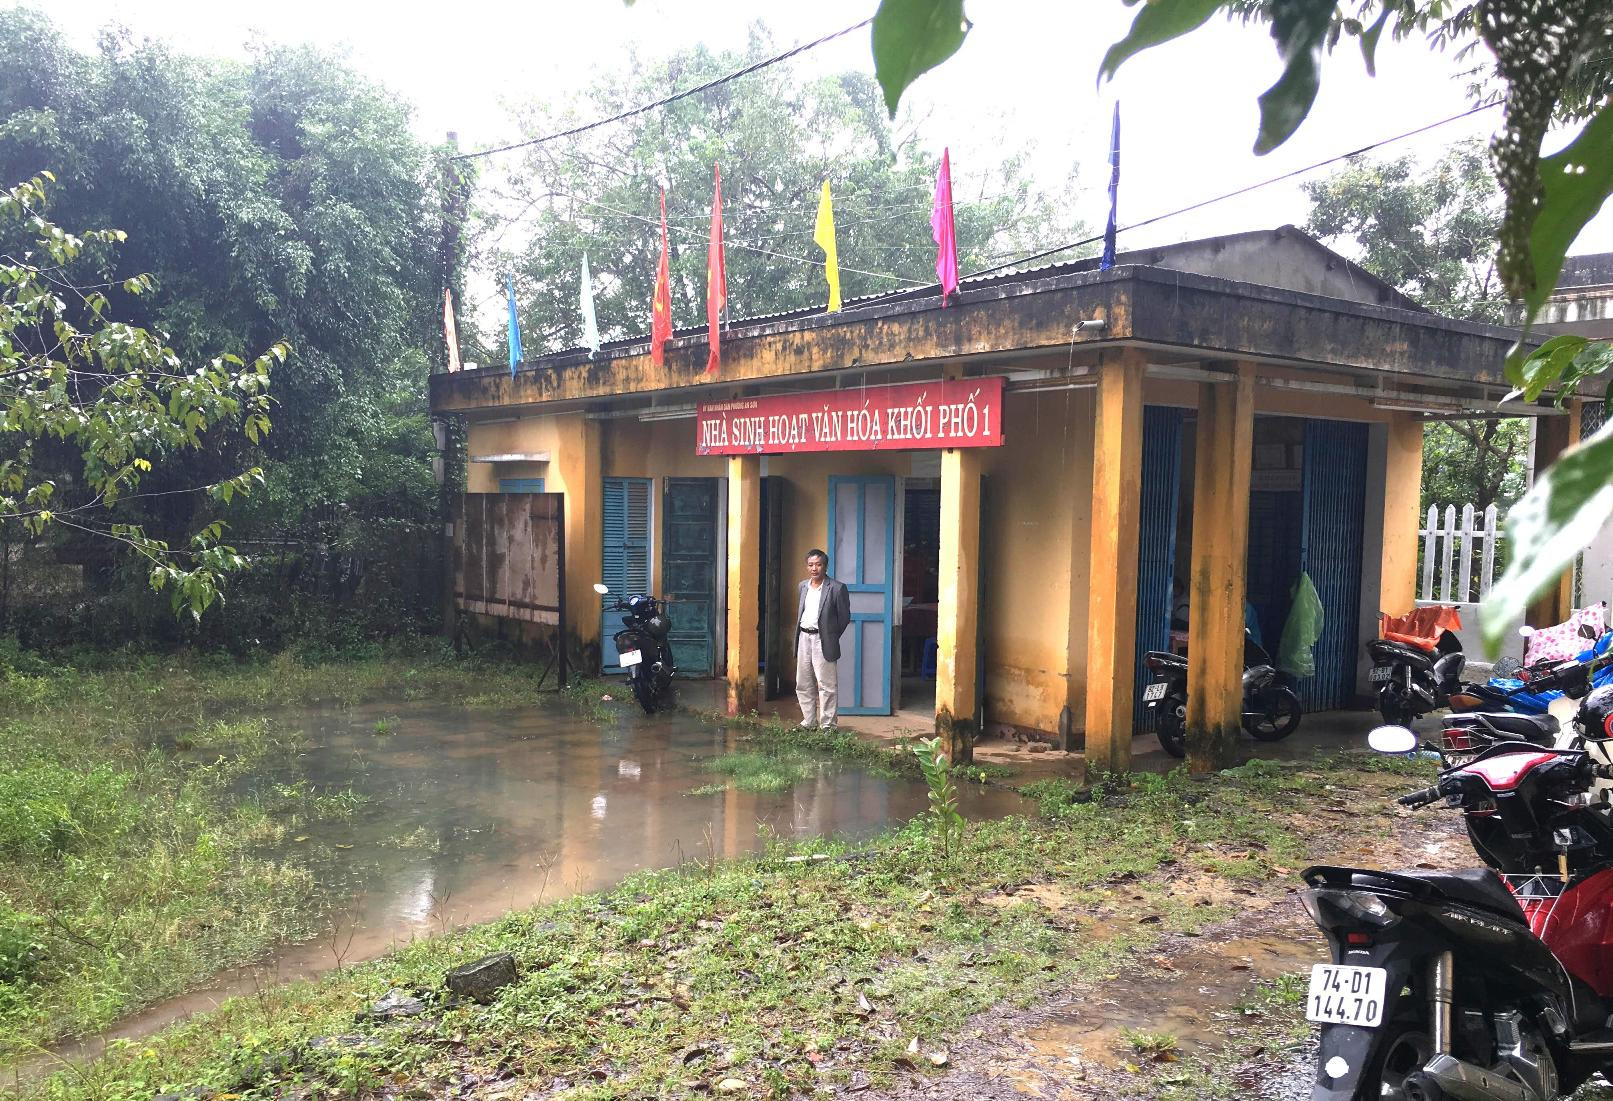 Dù mới trải qua trận mưa nhỏ nhưng nước đã ngập sân nhà sinh hoạt văn hóa Khối phố 1. Ảnh: PHAN VINH